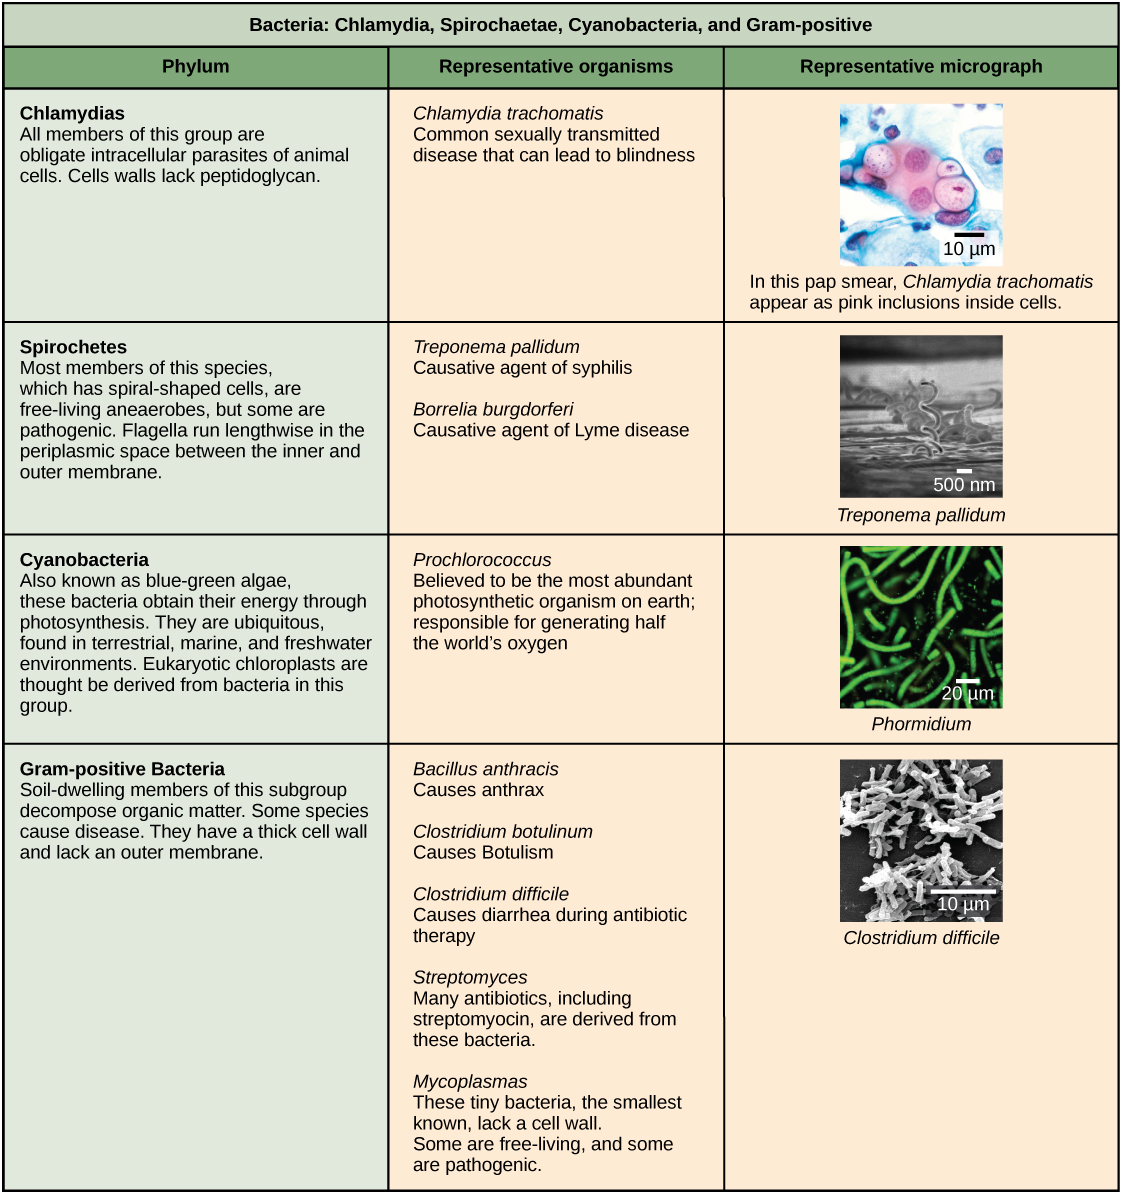 Ce tableau décrit quatre types de bactéries, à savoir la chlamydia, les spirochètes, les cyanobactéries et les bactéries à Gram positif. Le tableau est organisé par phylum, leurs organismes représentatifs et une micrographie représentative